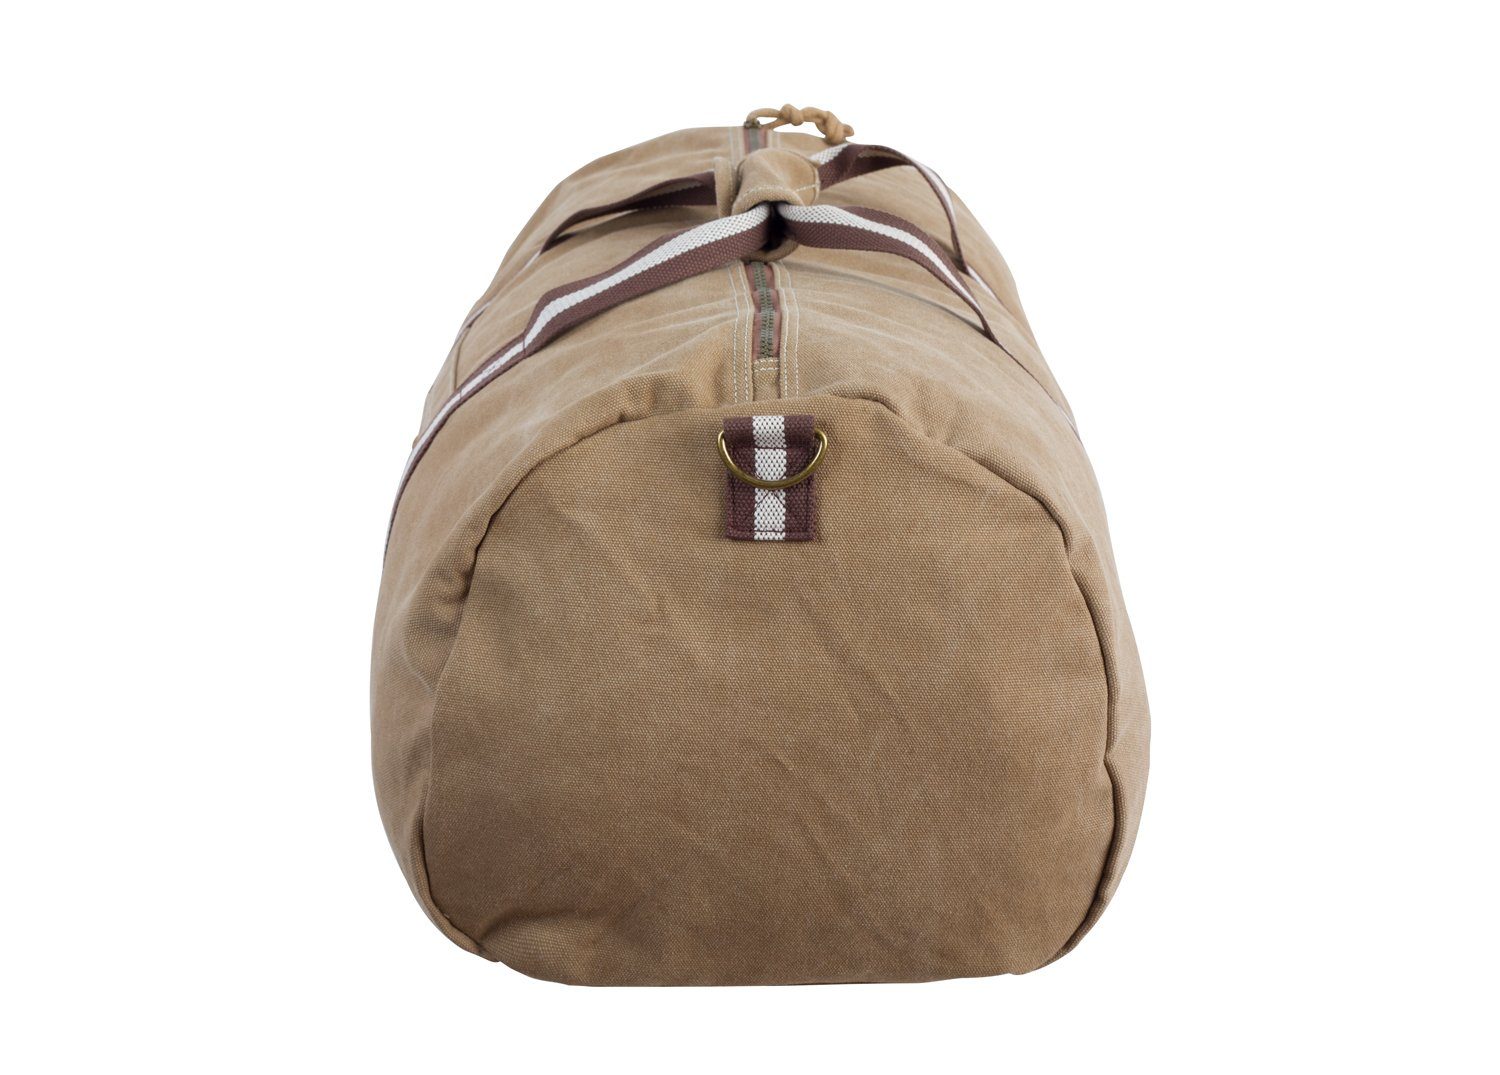 Bag Canvas Sand Manufaktur13 - Barrel Sporttasche, Sporttasche Fassungsvermögen 45L Bag, Duffel Reisetasche,